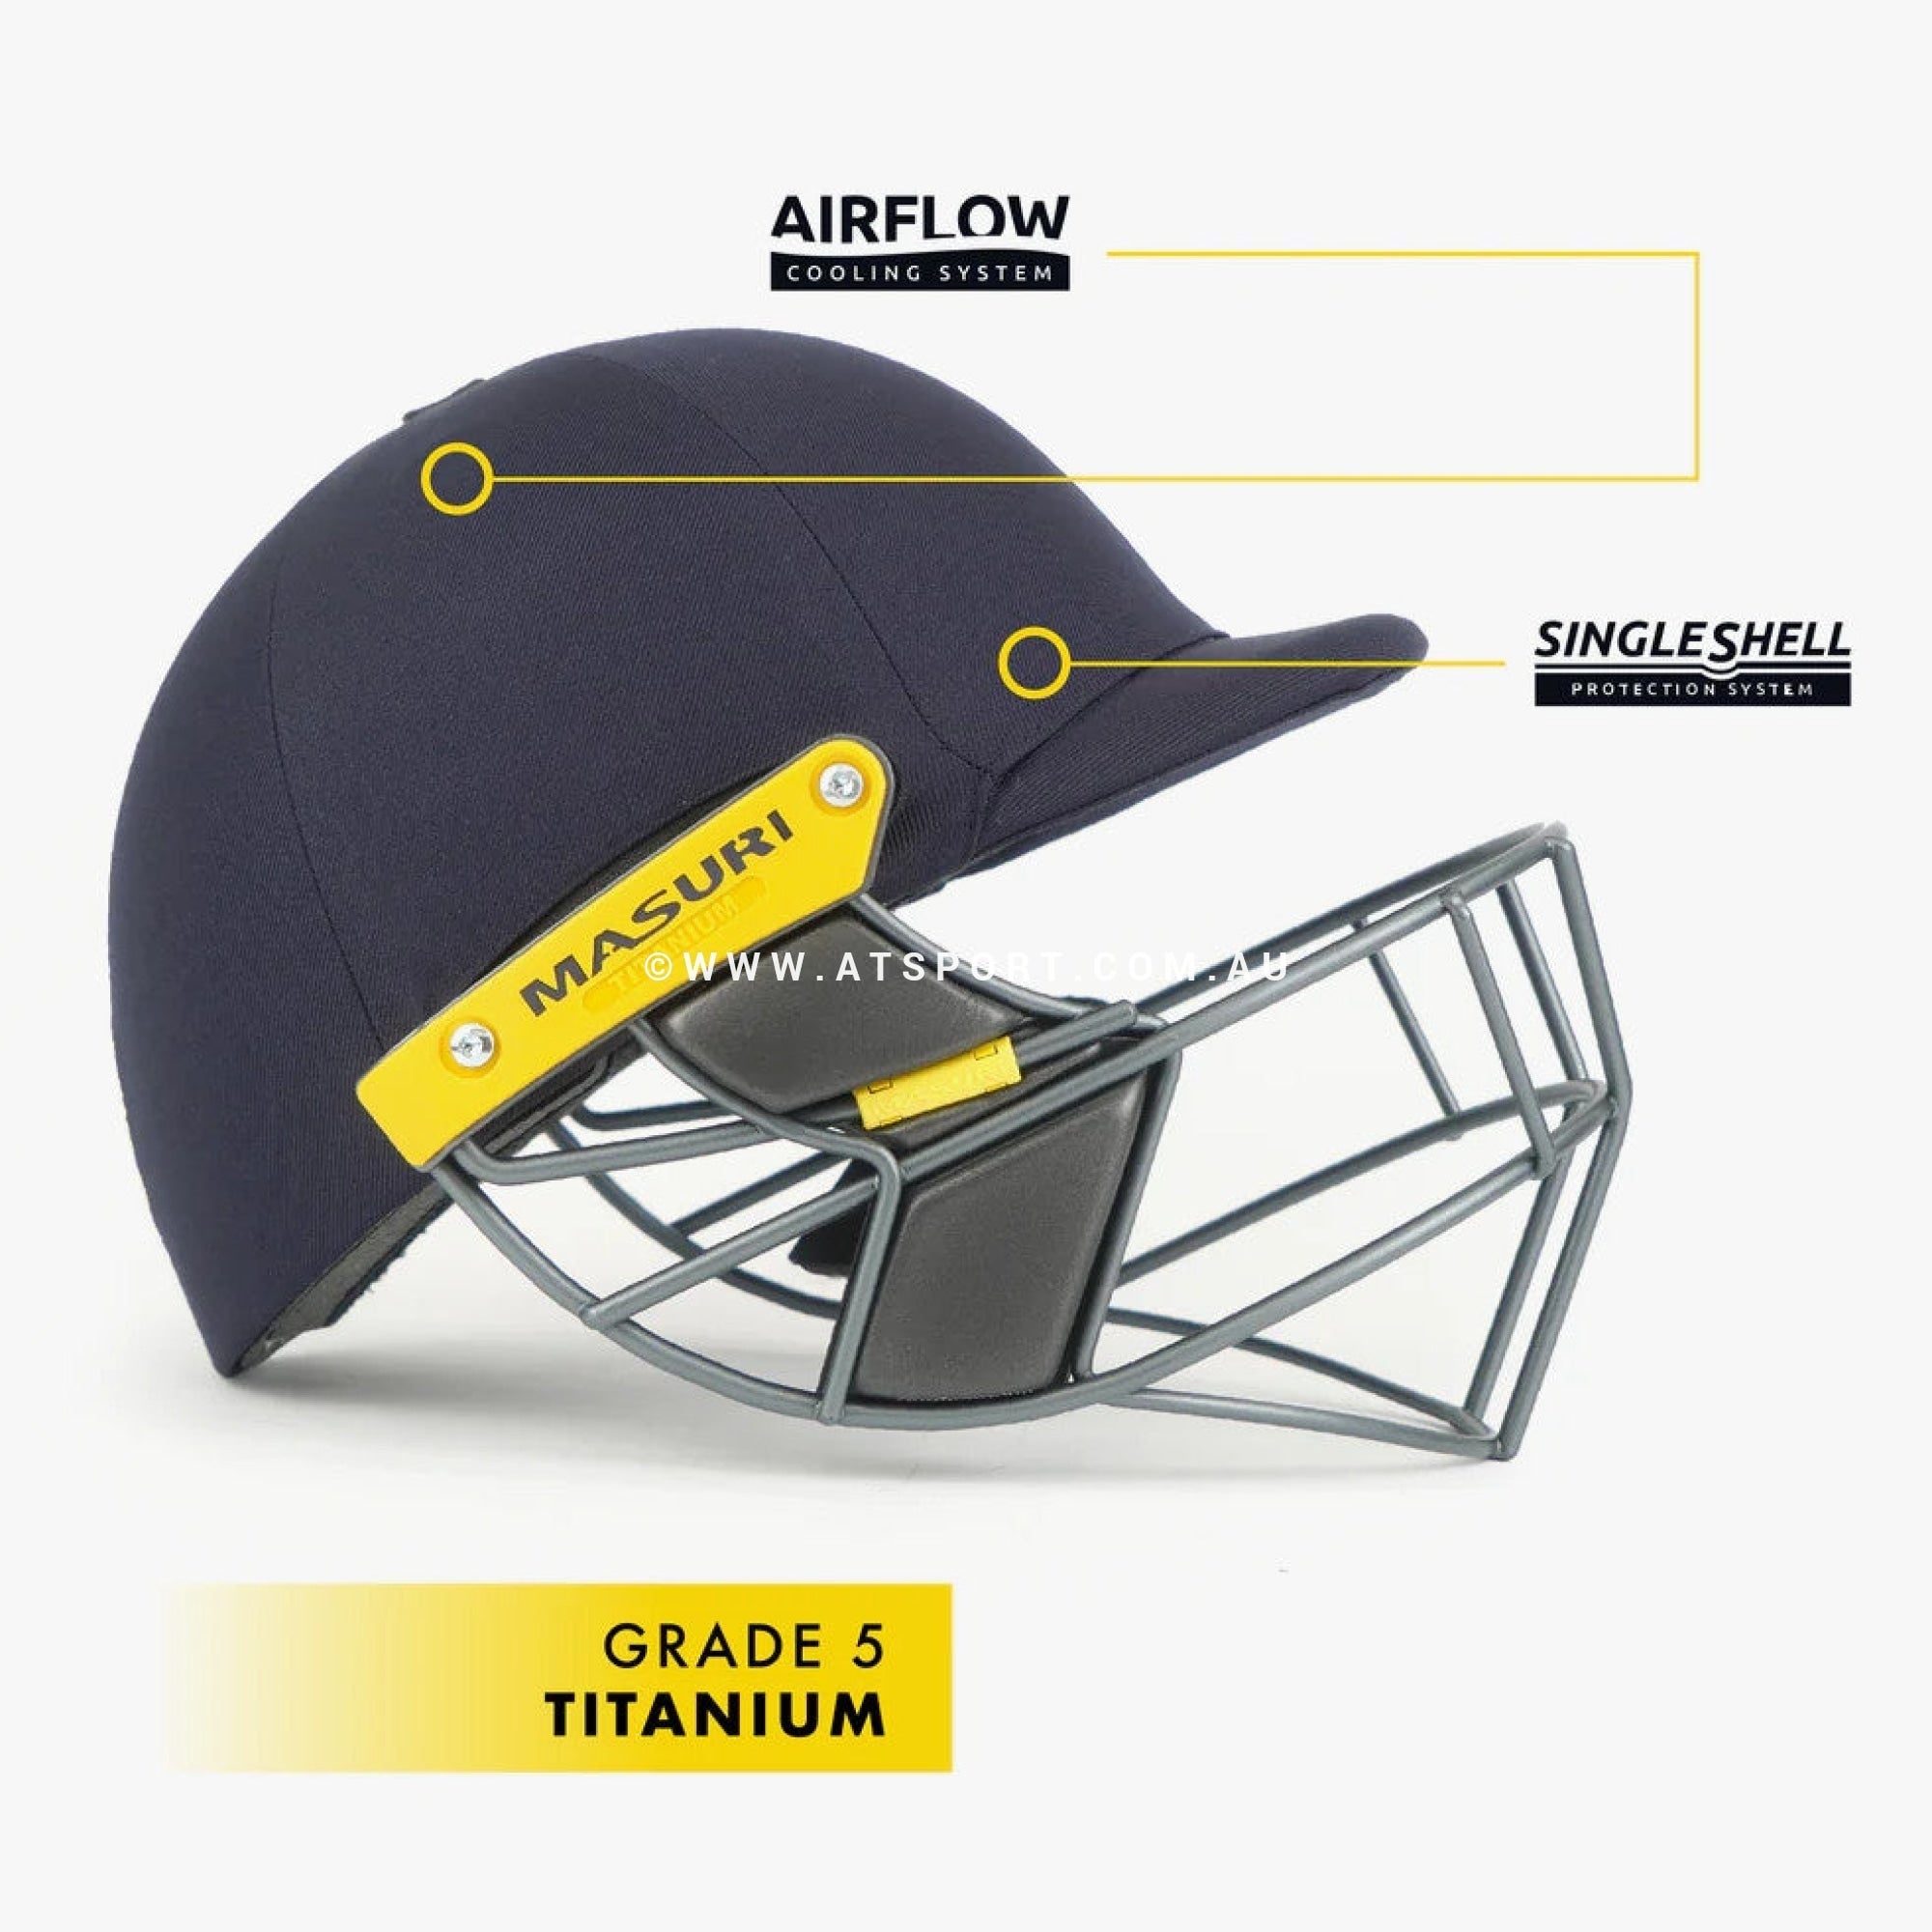 Masuri T LINE Cricket Helmet - CUSTOM LOGO - AT Sports